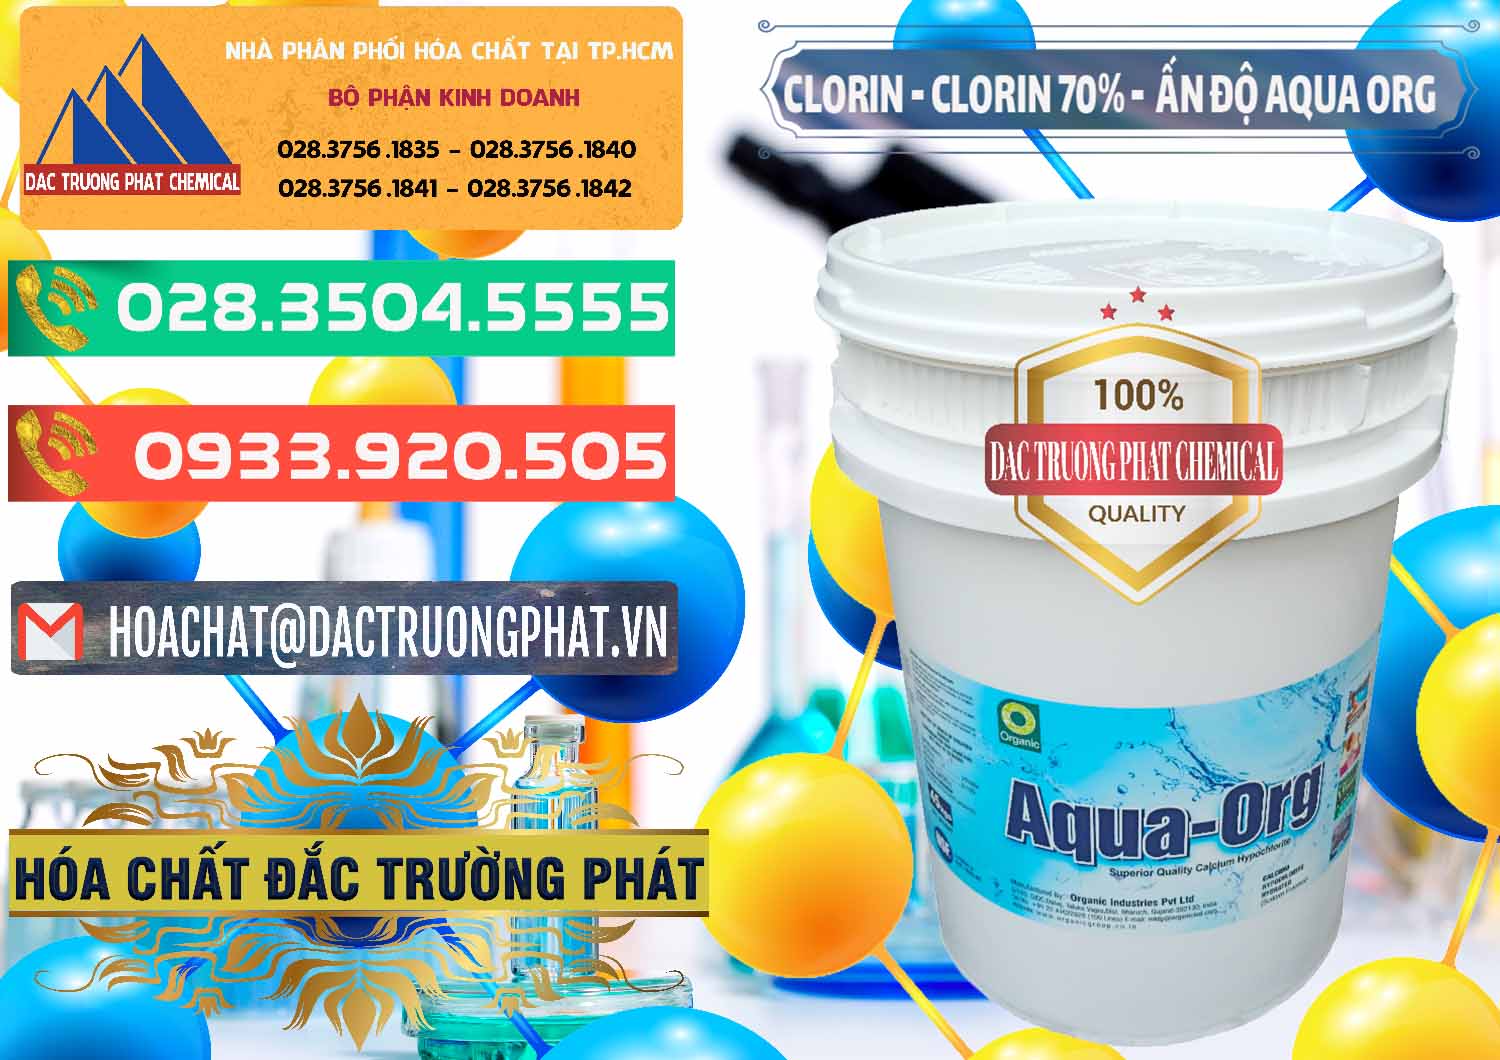 Cty chuyên kinh doanh và bán Chlorine – Clorin Ấn Độ Aqua ORG Organic India - 0051 - Cty chuyên cung cấp & kinh doanh hóa chất tại TP.HCM - congtyhoachat.com.vn